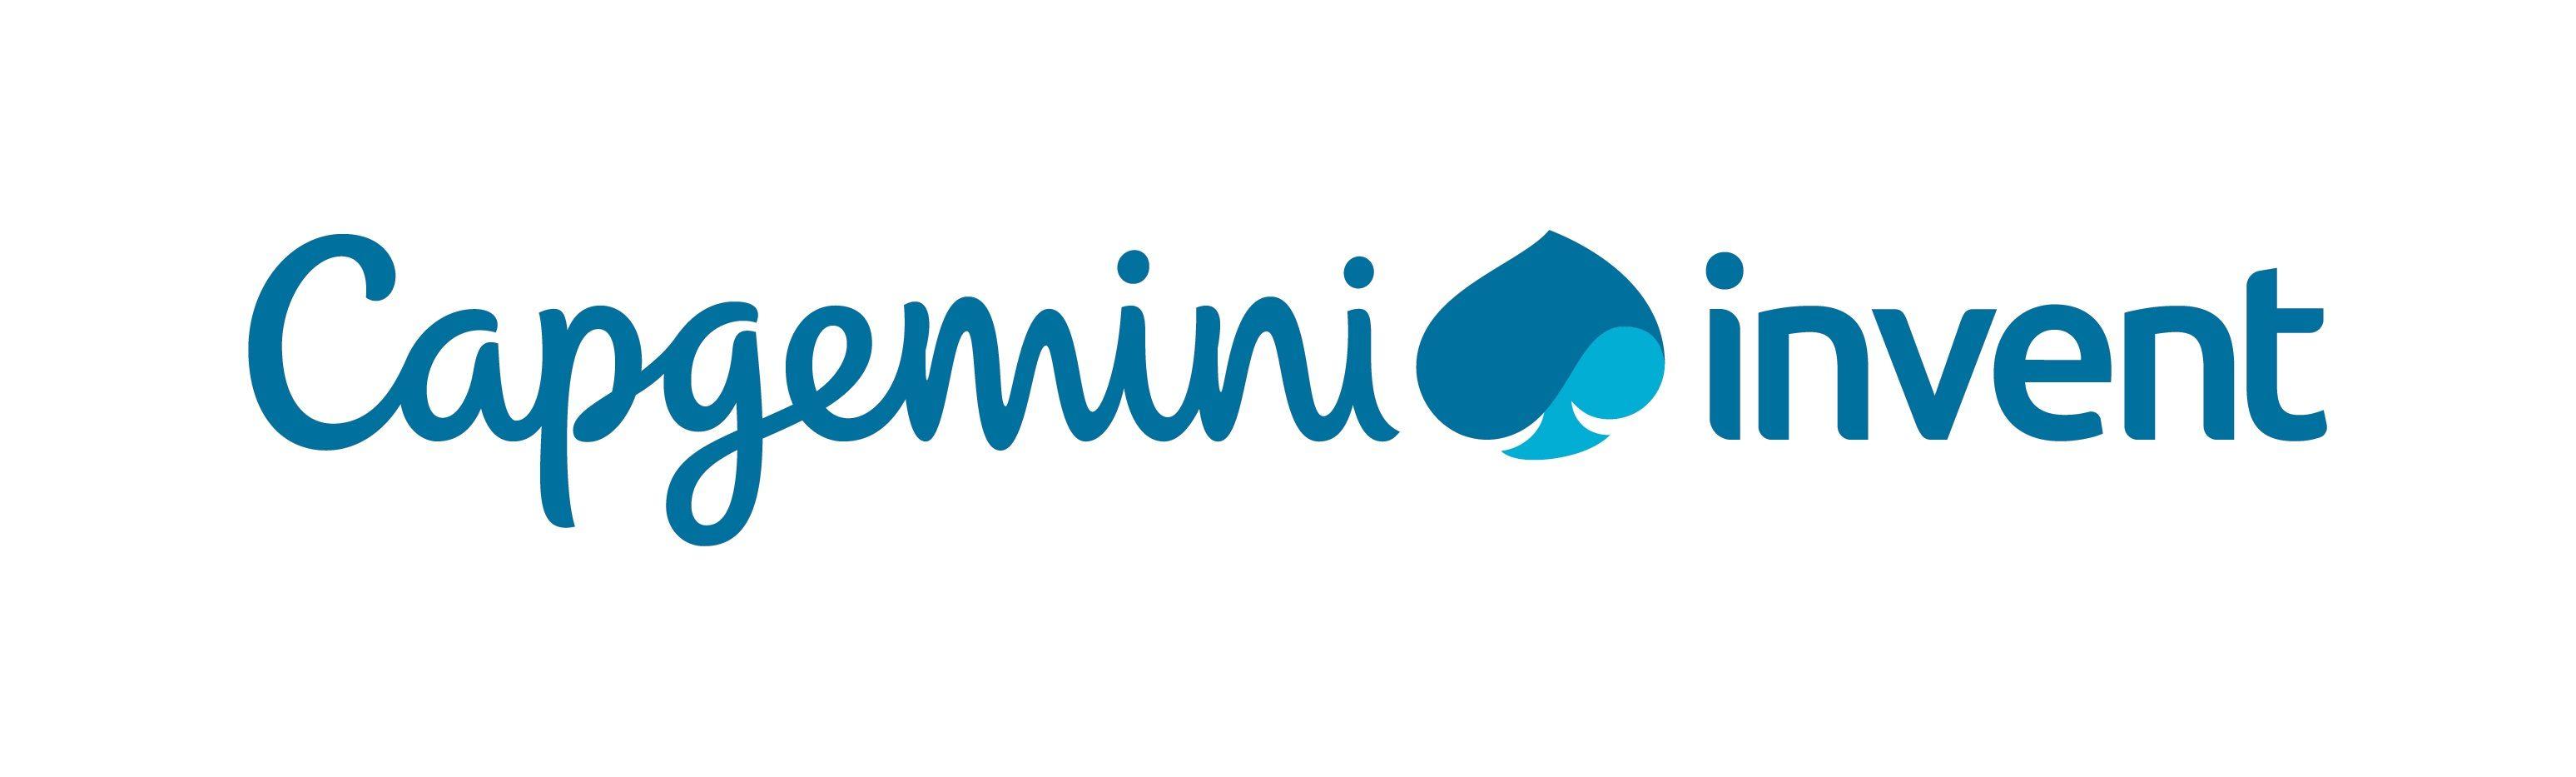 Capgemini Logo - Capgemini launches 'Capgemini Invent'